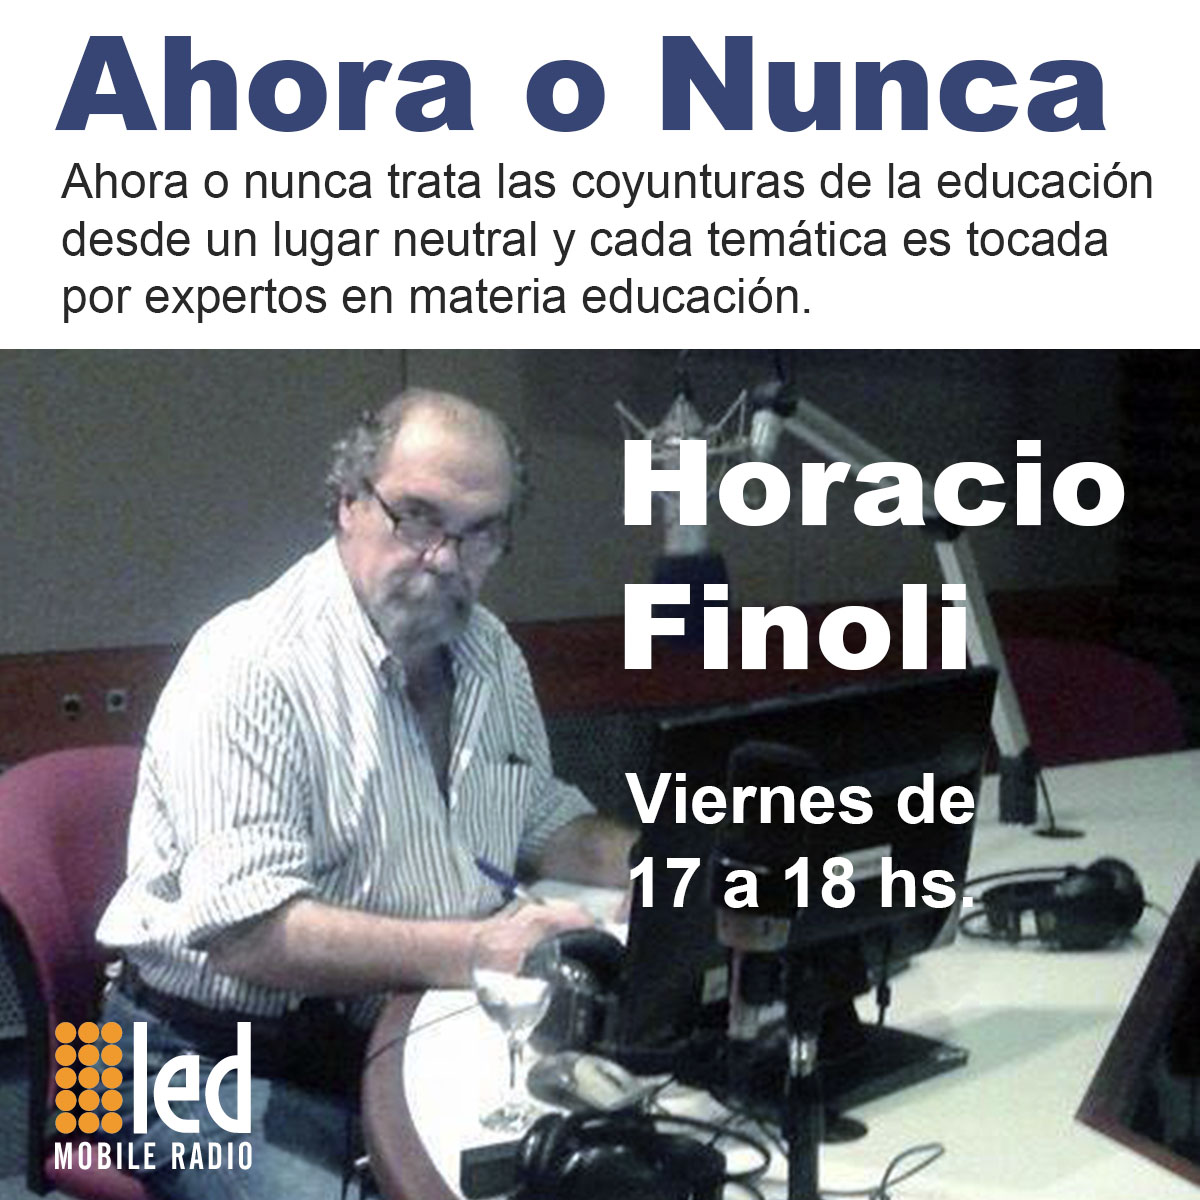 #Podcast Ahora o Nunca | 06.07: Entrevista a Carlos Greco, rector Universidad Nacional de San Martín